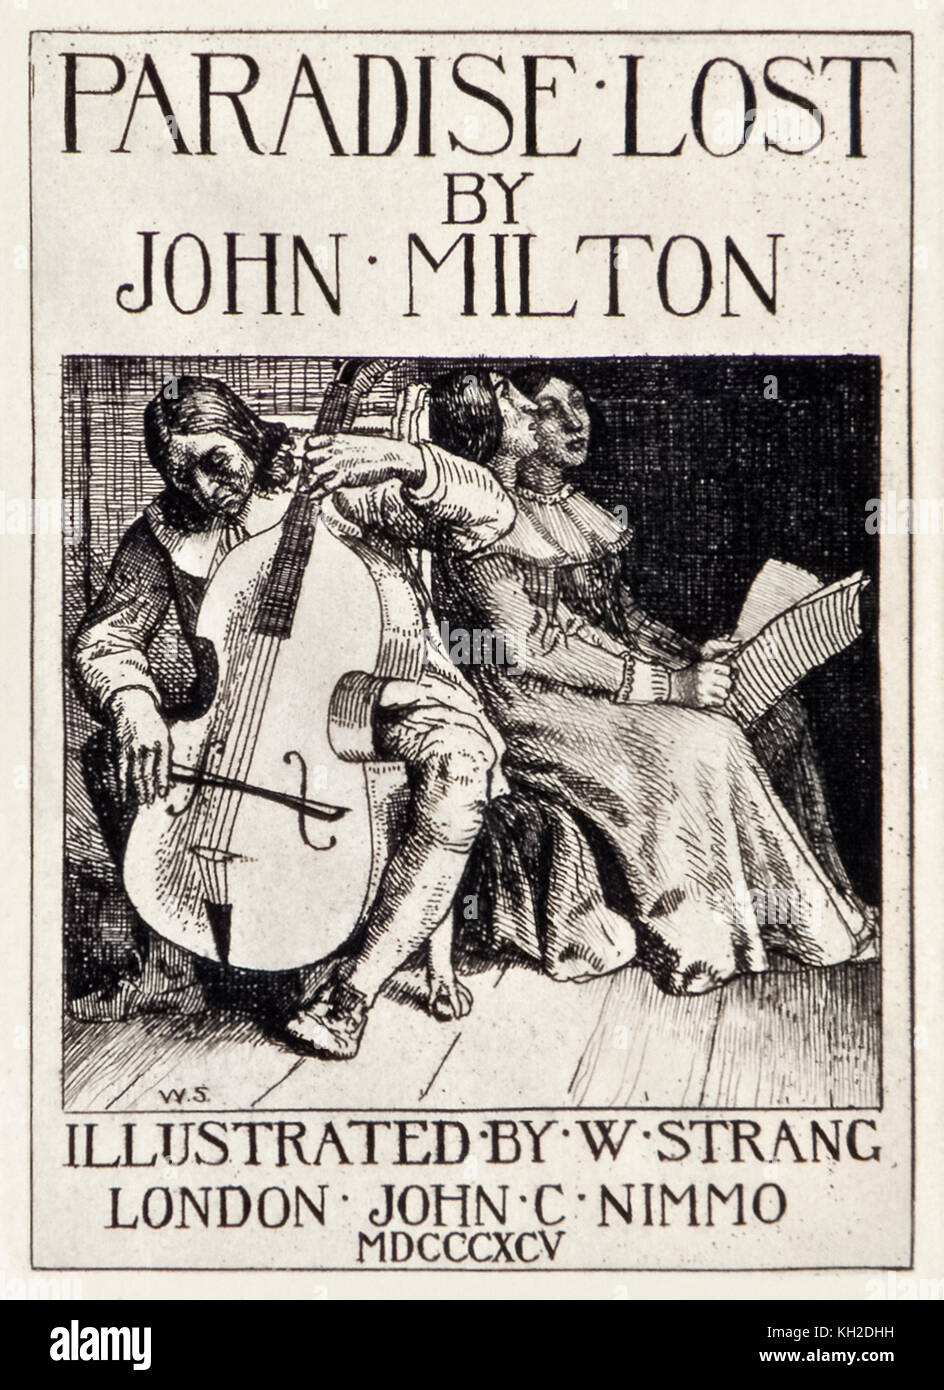 Titel von "Paradise Lost" von John Milton (1608-1674) eine Reihe von 12 Illustrationen von William Strang (1859-1921), Milton Cello spielen für seine Töchter geätzt. Weitere Informationen finden Sie unten. Stockfoto